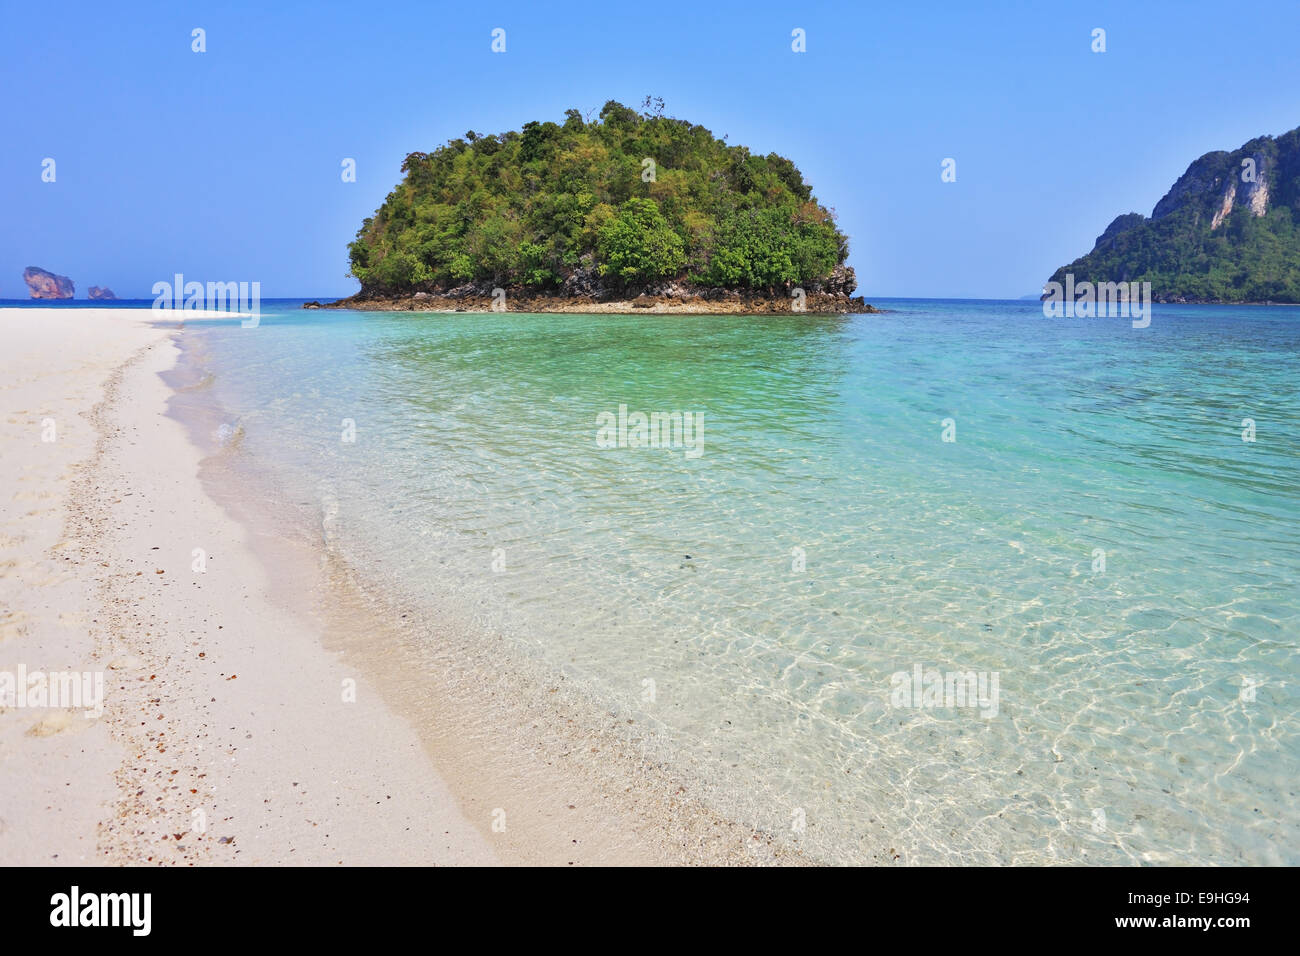 Magica Isola vicino a una spiaggia Foto Stock